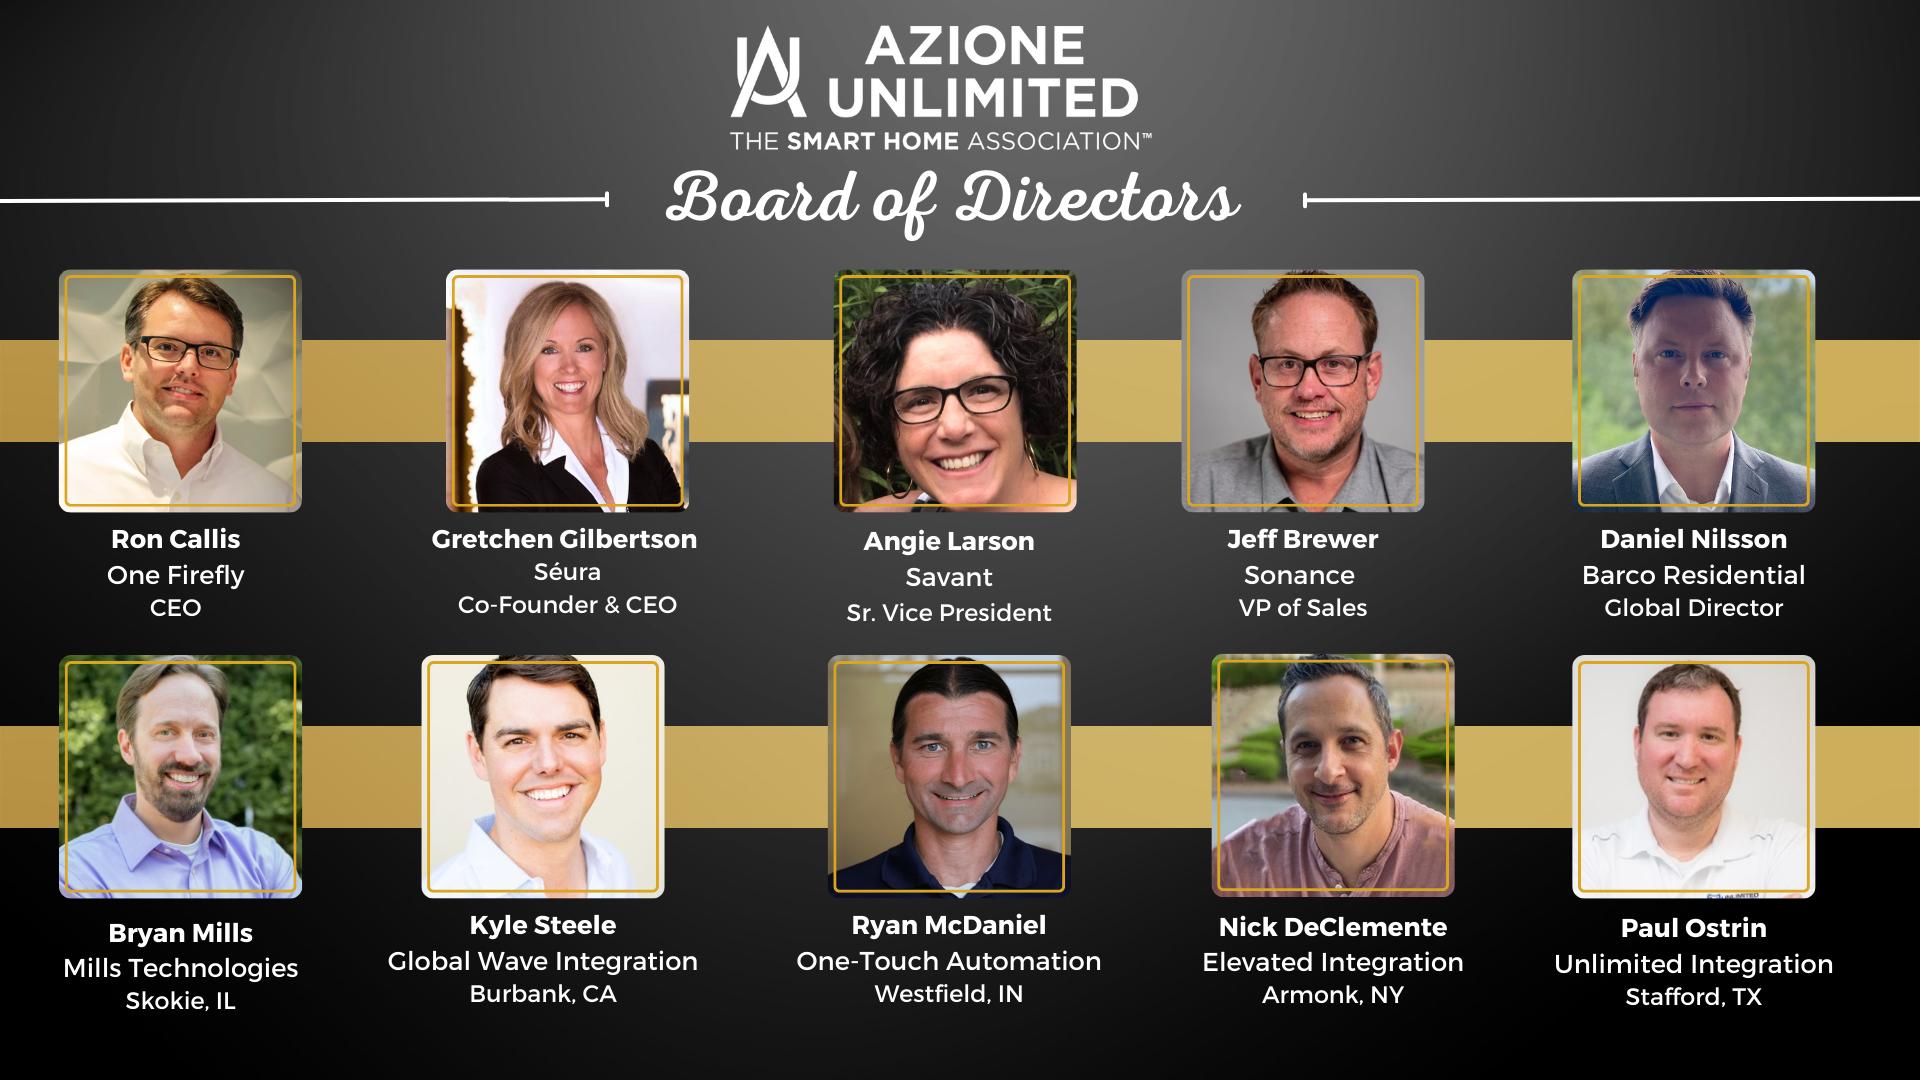 The Azione Board of Advisors now includes Angela Larson